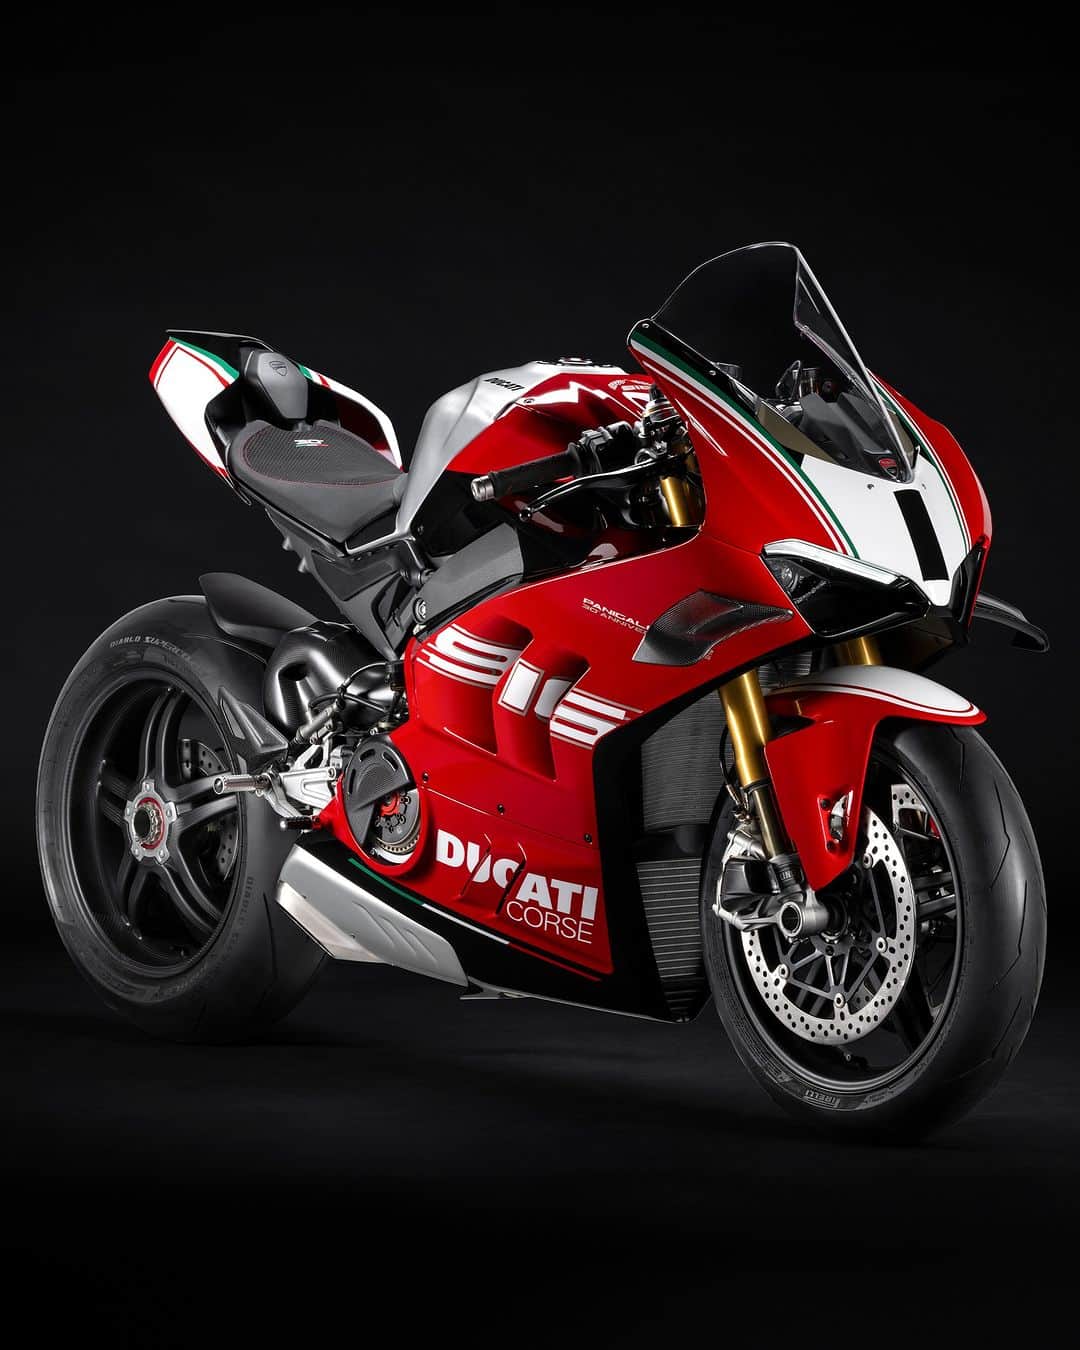 Ducati Japanのインスタグラム：「新型パニガーレV4 SP2 30°アニバーサリオ916、発表。 時を超越して、偉大なレガシーへの憧れが現実のものになりました。  アイコニックなDucati916の誕生から30周年を祝うために登場したこの特別限定モデルによって、偉大なレガシーは未来に受け継がれます。  500人のエンスージアストに捧げられるこのモーターサイクルは、SP2の最先端テクノロジーとストーリーに満ちた美しいカラーリングを融合させたモデルです。この特別なカラーリングは、1999年にカール・フォガティと共にスーパーバイク世界選手権を制したマシンのカラーリングをモチーフにしています。  トリコロールカラーのストライプ、誇らしげなチャンピオンナンバー"1"の存在感、そして独特なレッドのフロントフェンダーによって、あの輝かしい日が鮮やかによみがえります。 しかし、この美しいモーターサイクルは、より俊敏で、より扱いやすく、よりパワフルに生まれ変わっています。  パニガーレV4 SP2 30°アニバーサリオ916にまたがり、偉大なレガシーの力（The Power of Legacy)を、思い切り解き放ってください。  詳細は公式Webサイトをご覧ください。  #ドゥカティいいじゃん #Ducati #ドゥカティ #パニガーレ #パニガーレV4 #PanigaleV4 #パニガーレV4SP230°アニバーサリオ916 #PanigaleV4SP230Anniversario916 #ThePowerofLegacy #DucatiWorldPremiere #DWP2024 #ドゥカティワールドプレミア2024 #スーパースポーツ」